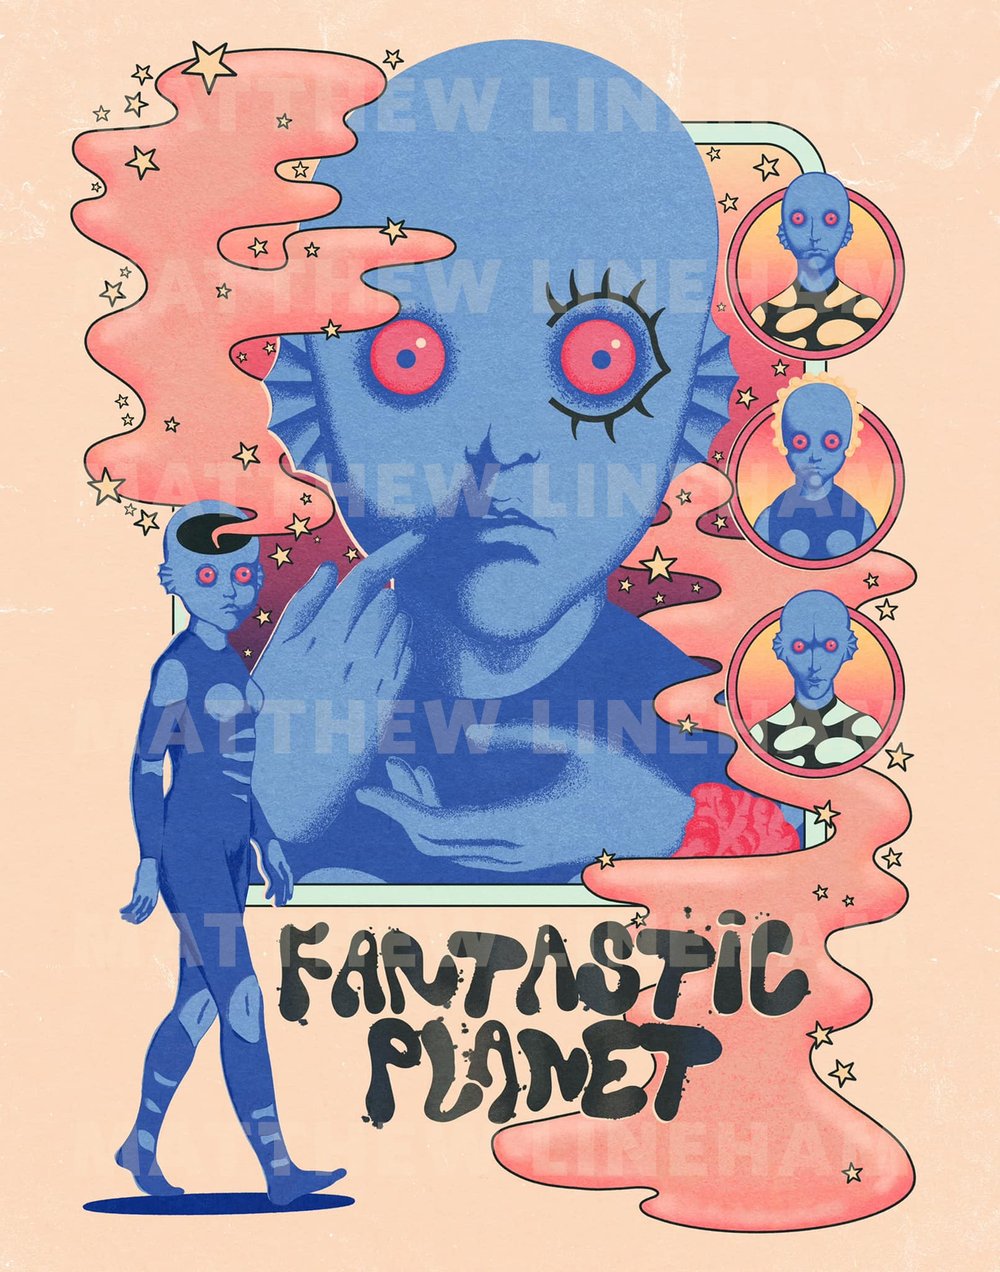 Fantastic Planet Art Print